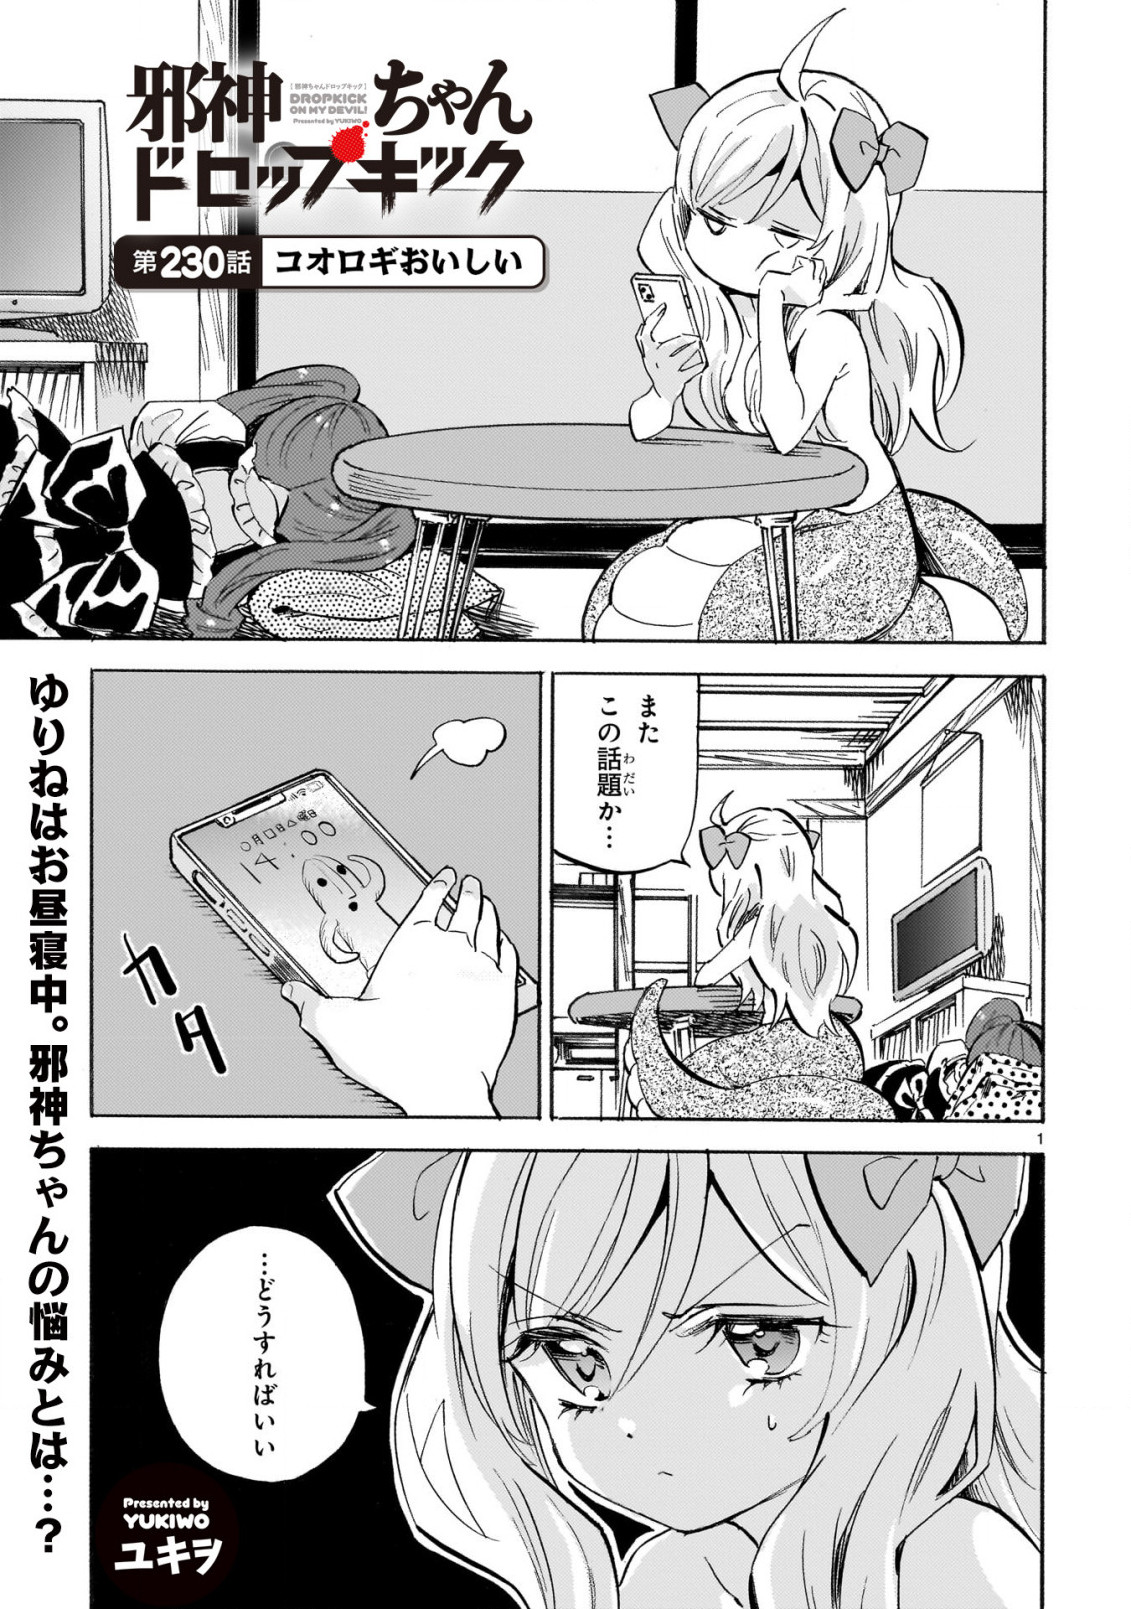 Jashin-chan Dropkick - Chapter 230 - Page 1